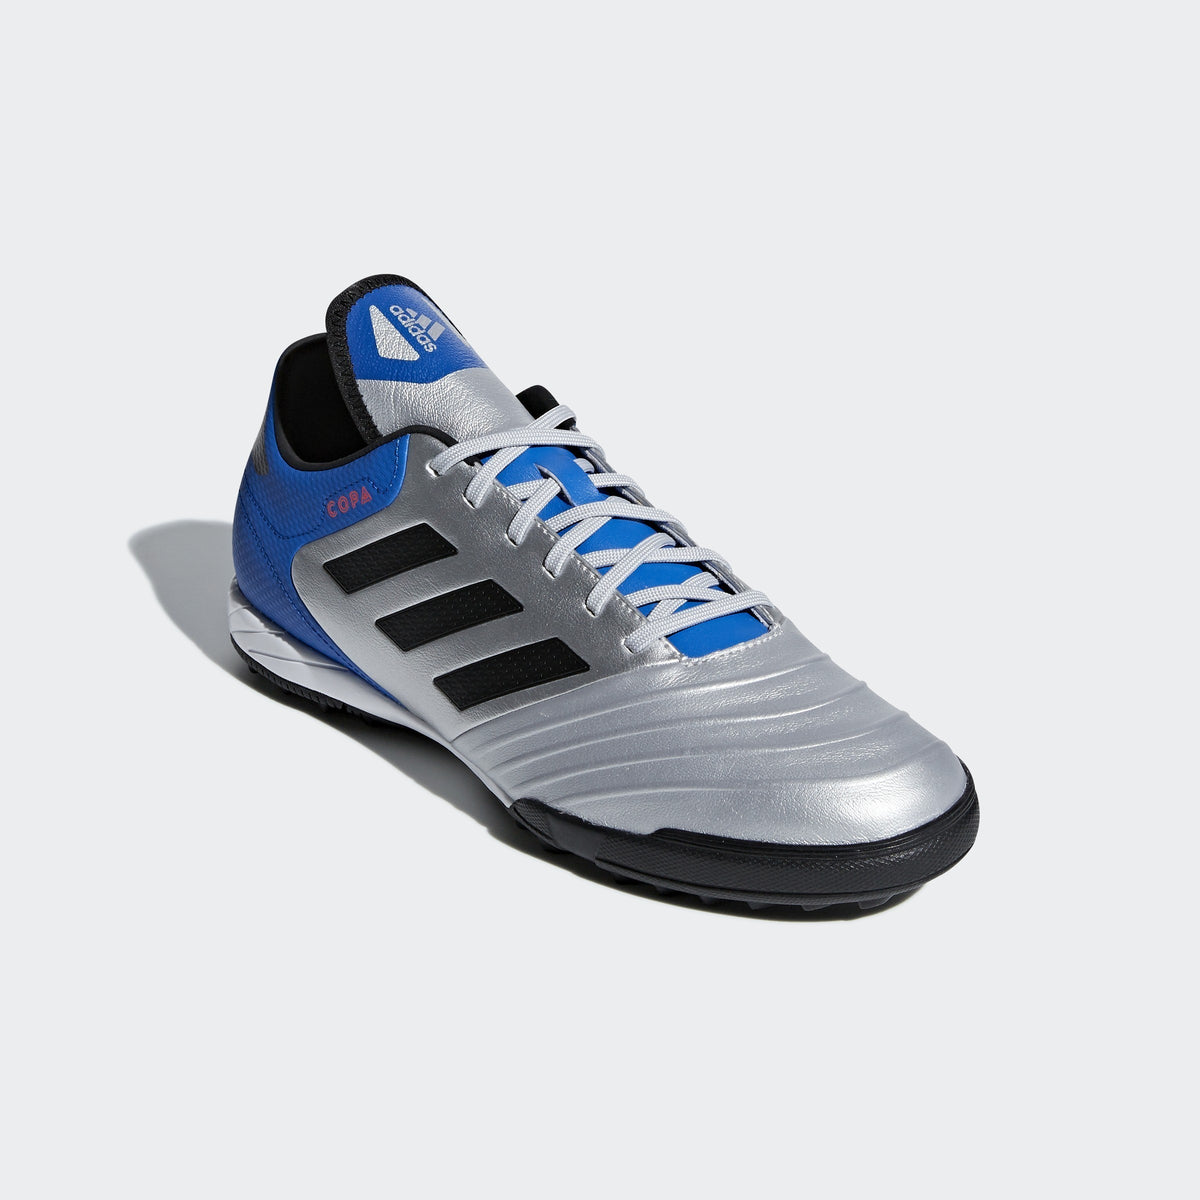 profesional novia Satisfacer Men's Copa Tango 18.3 TF Soccer Shoes - Silver/Black/Blue